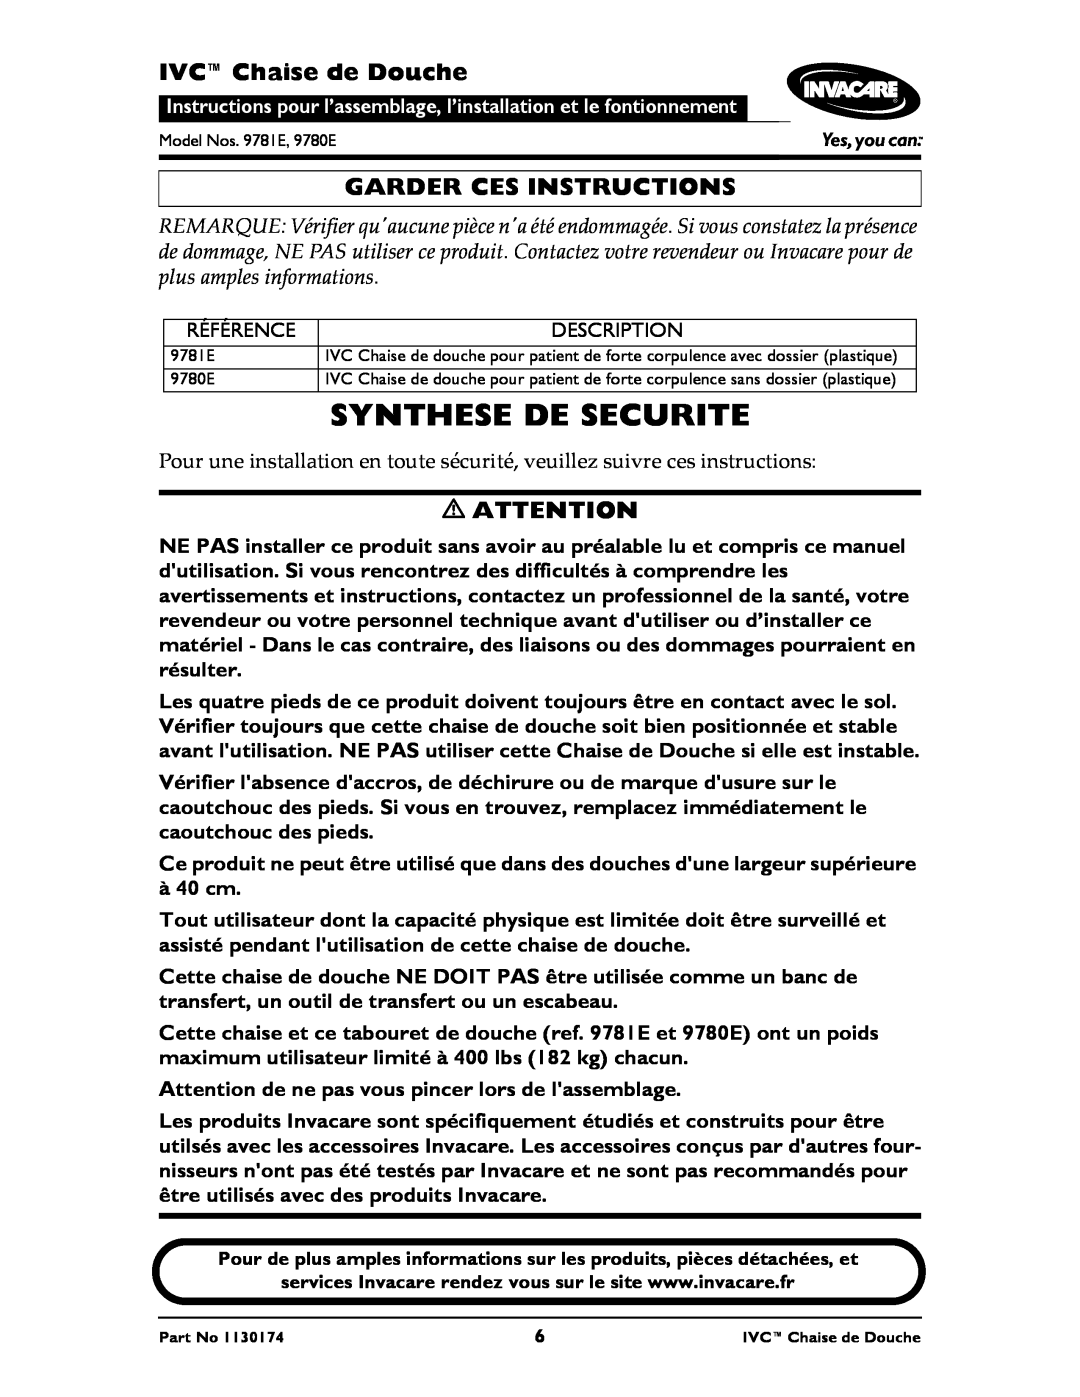 Invacare 9780E, 9781E instruction sheet Synthese De Securite, IVCChaise de Douche, Garder Ces Instructions 